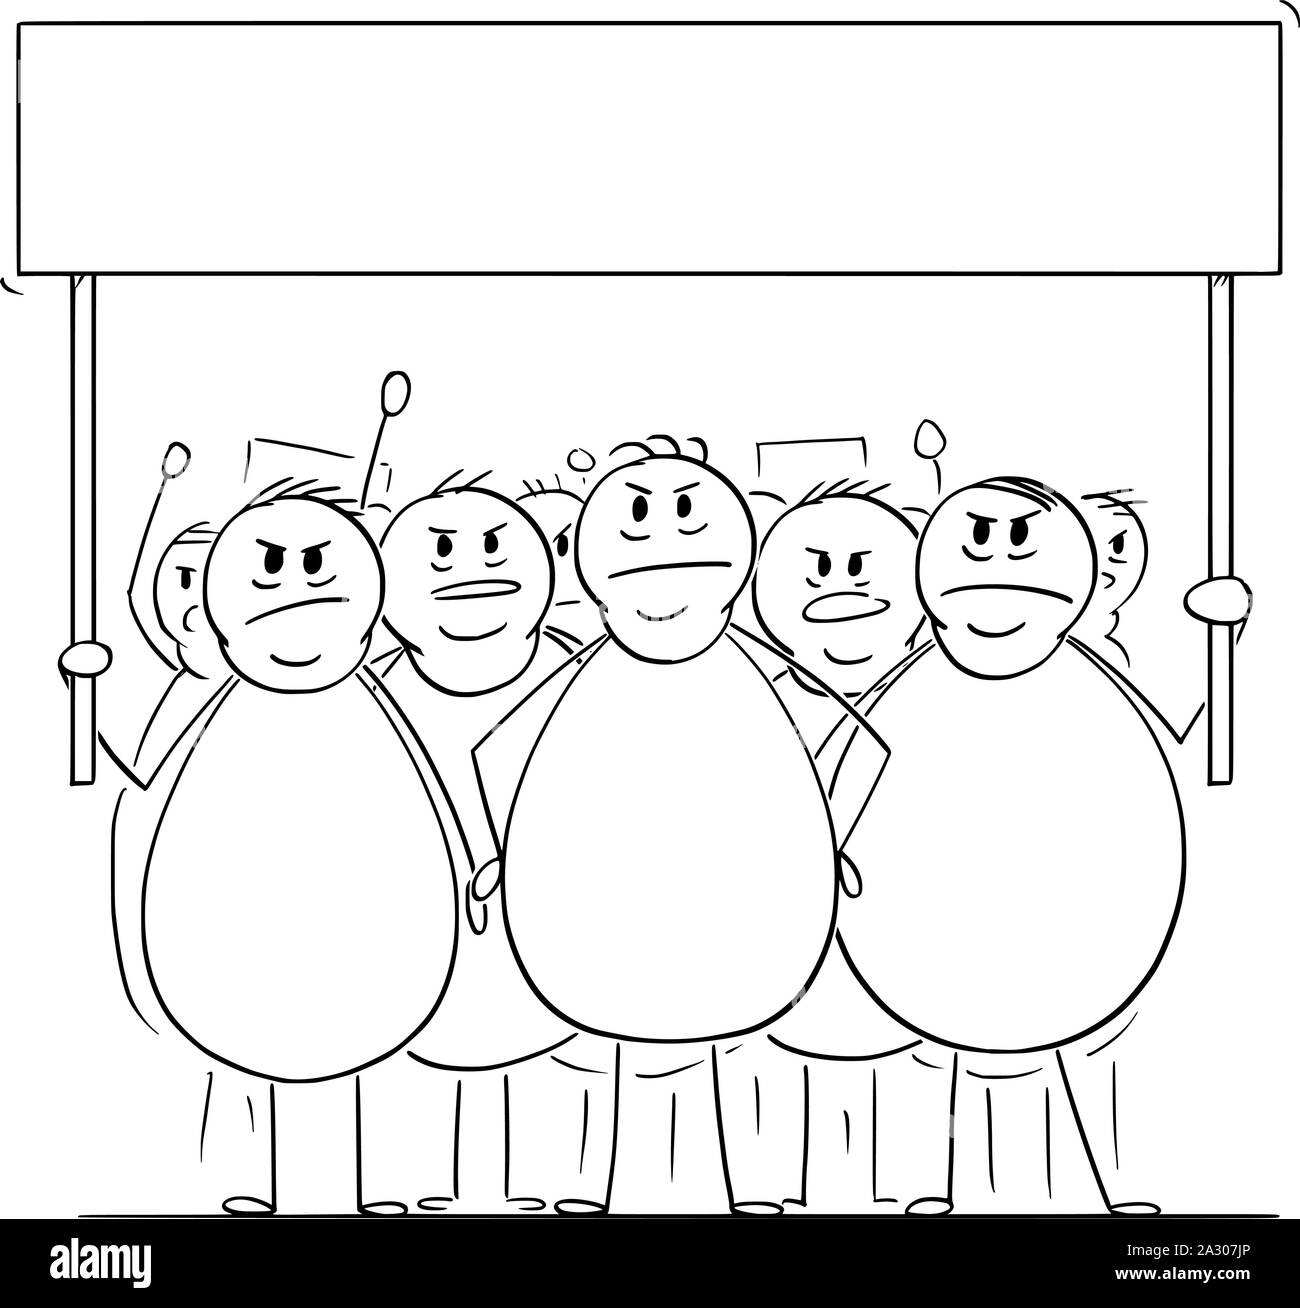 Cartoon vectores stick figura dibujo Ilustración conceptual del grupo de enojados sobrepeso o grasa hombres o personas en manifestación demostrando con signo vacío. Concepto de salud, el consumismo y la sostenibilidad. Ilustración del Vector